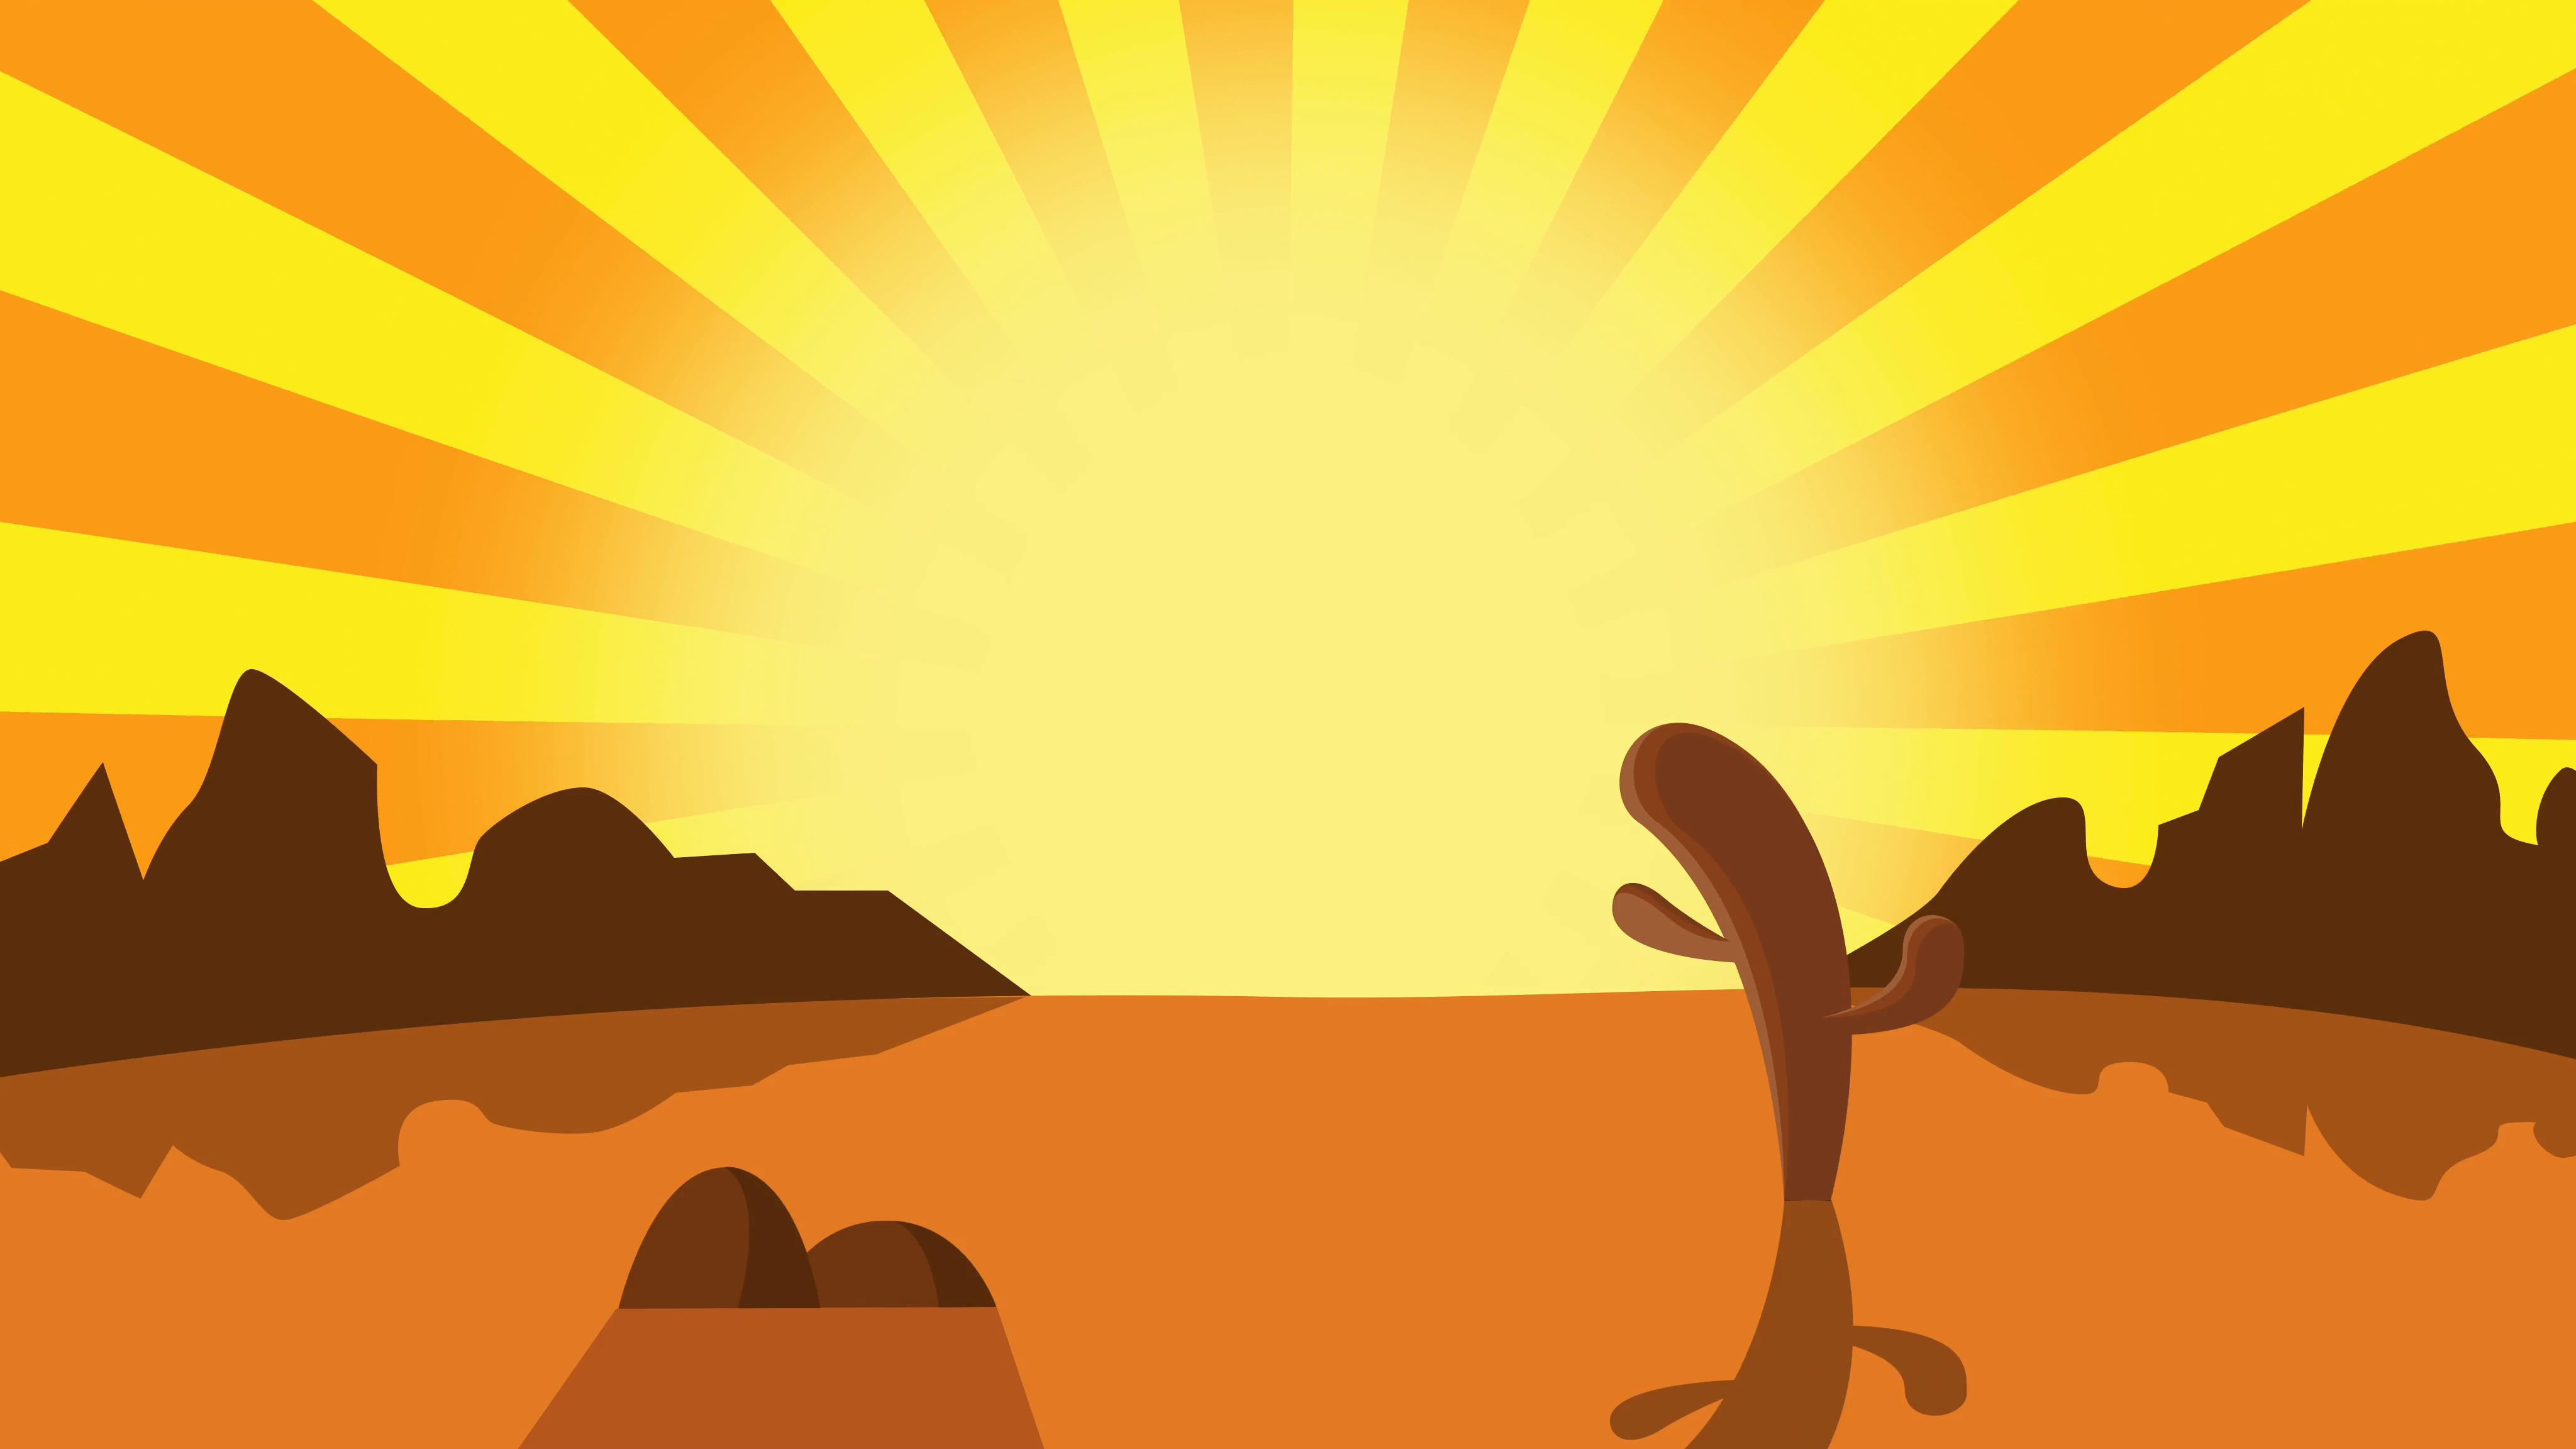 Desert Cartoon Wallpapers - Top Free Desert Cartoon Backgrounds